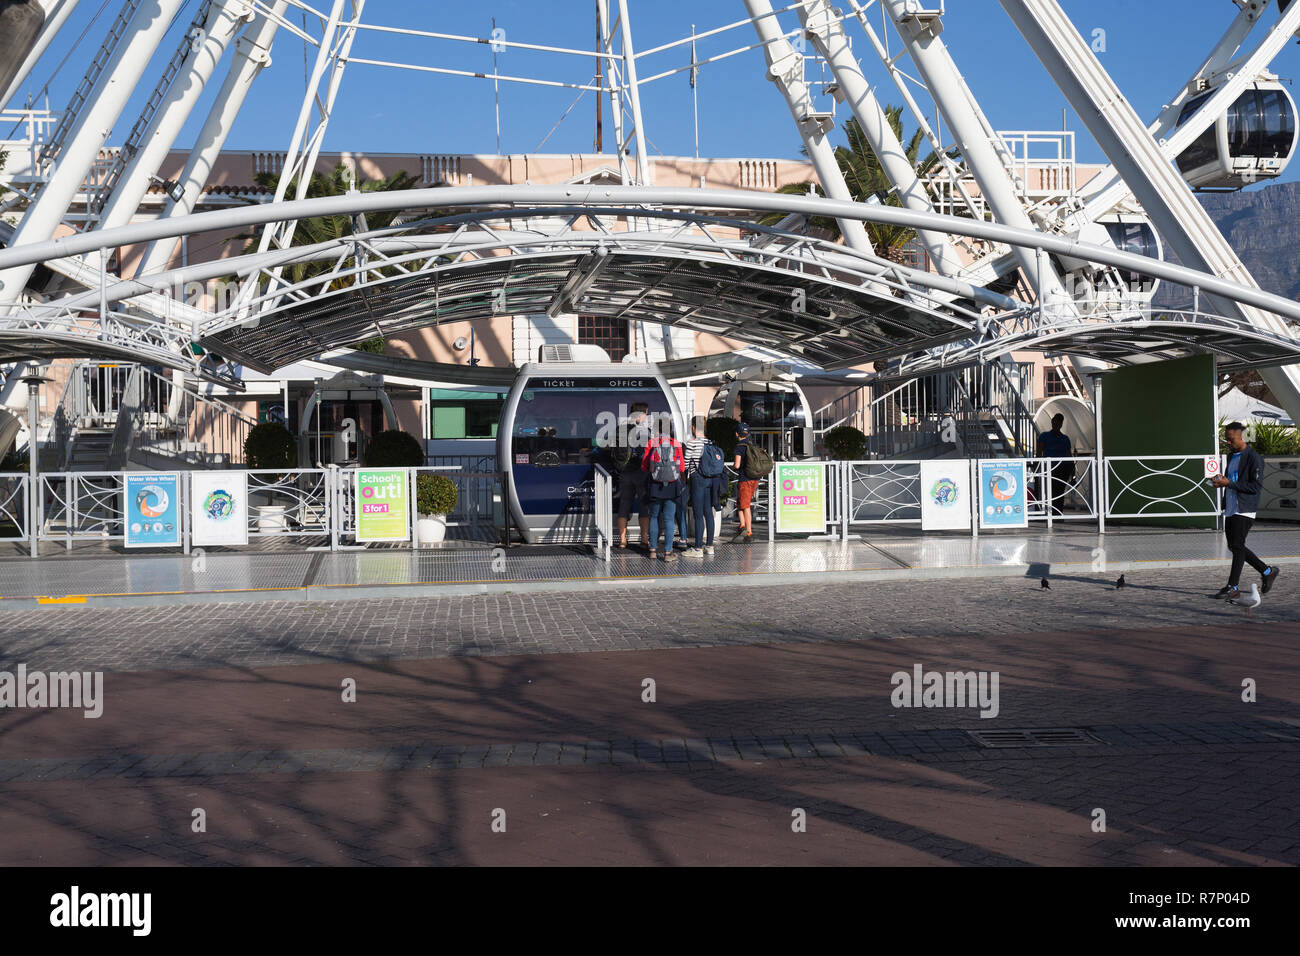 Capo ruota Ferris Wheel o grande ruota a V&A Waterfront di Città del Capo in Sud Africa con persone ad acquistare i biglietti presso la biglietteria o la biglietteria Foto Stock